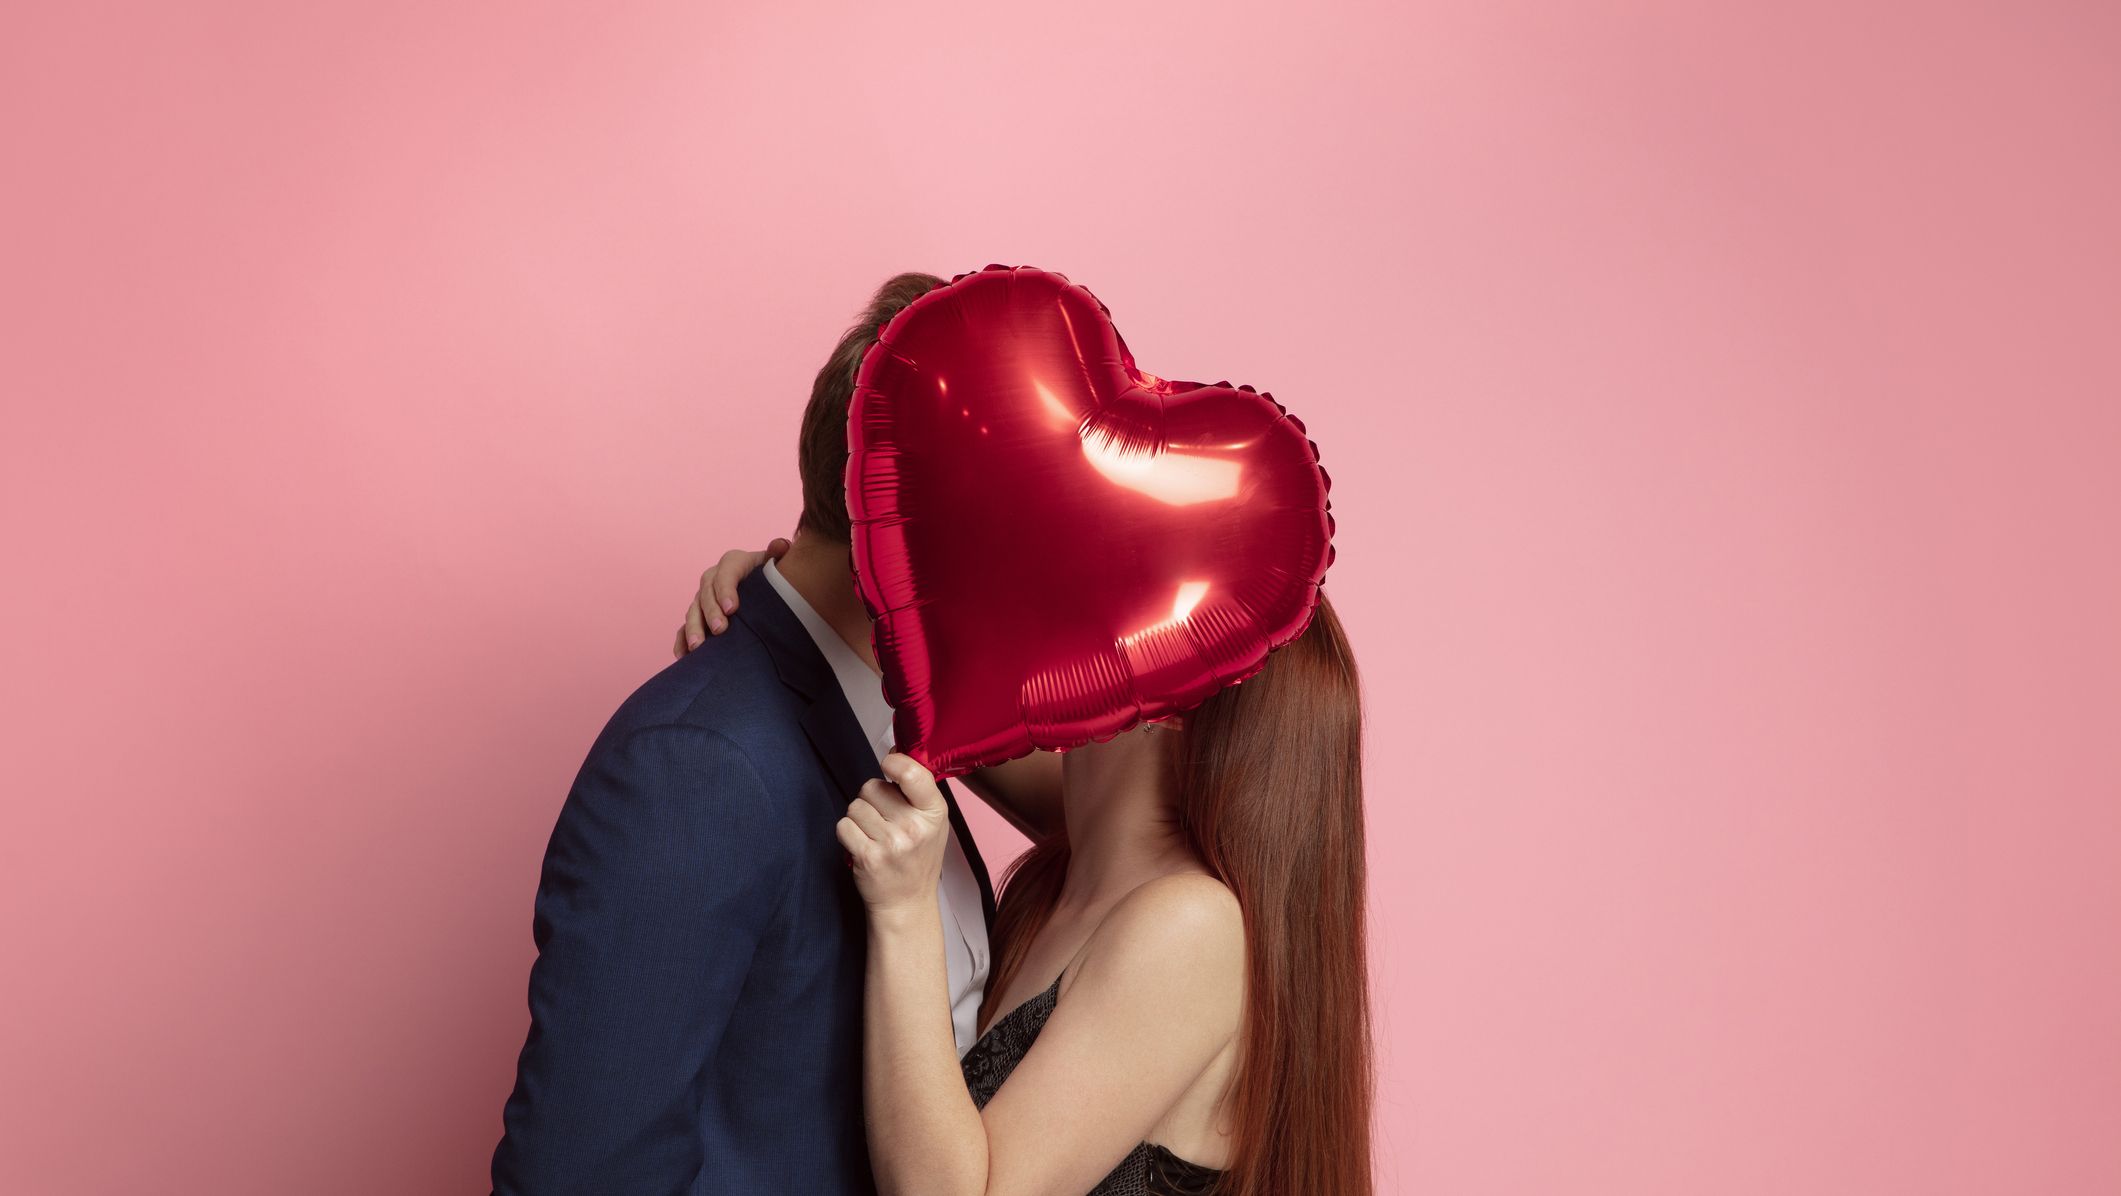 Valentine's Day Activities, Valentine's Day Date Ideas